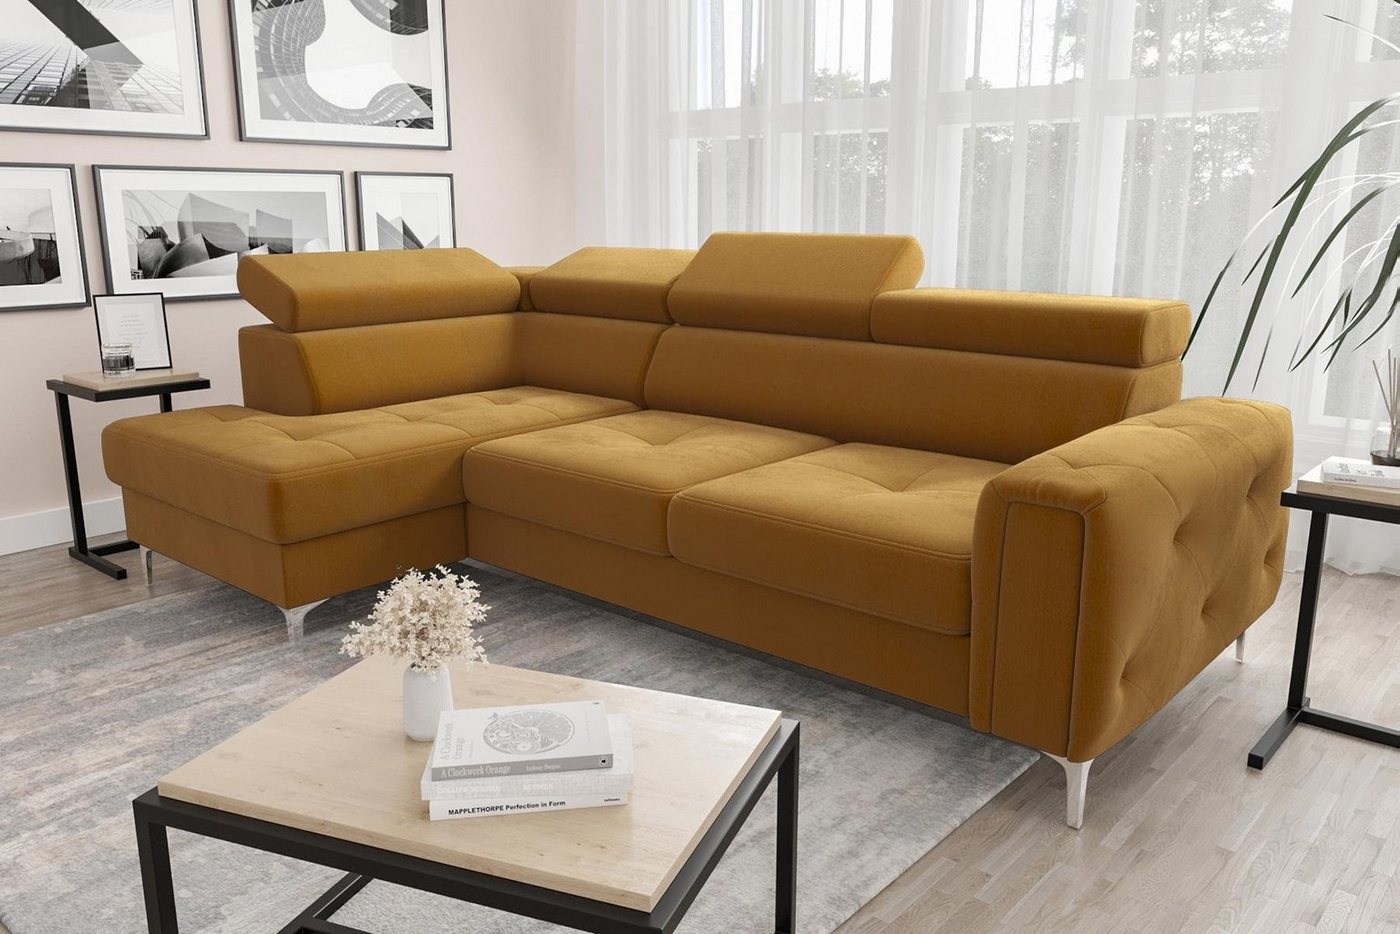 JVmoebel Ecksofa Ledersofa L-Form Couch Wohnzimmer Ecke Design, Made in Europe von JVmoebel